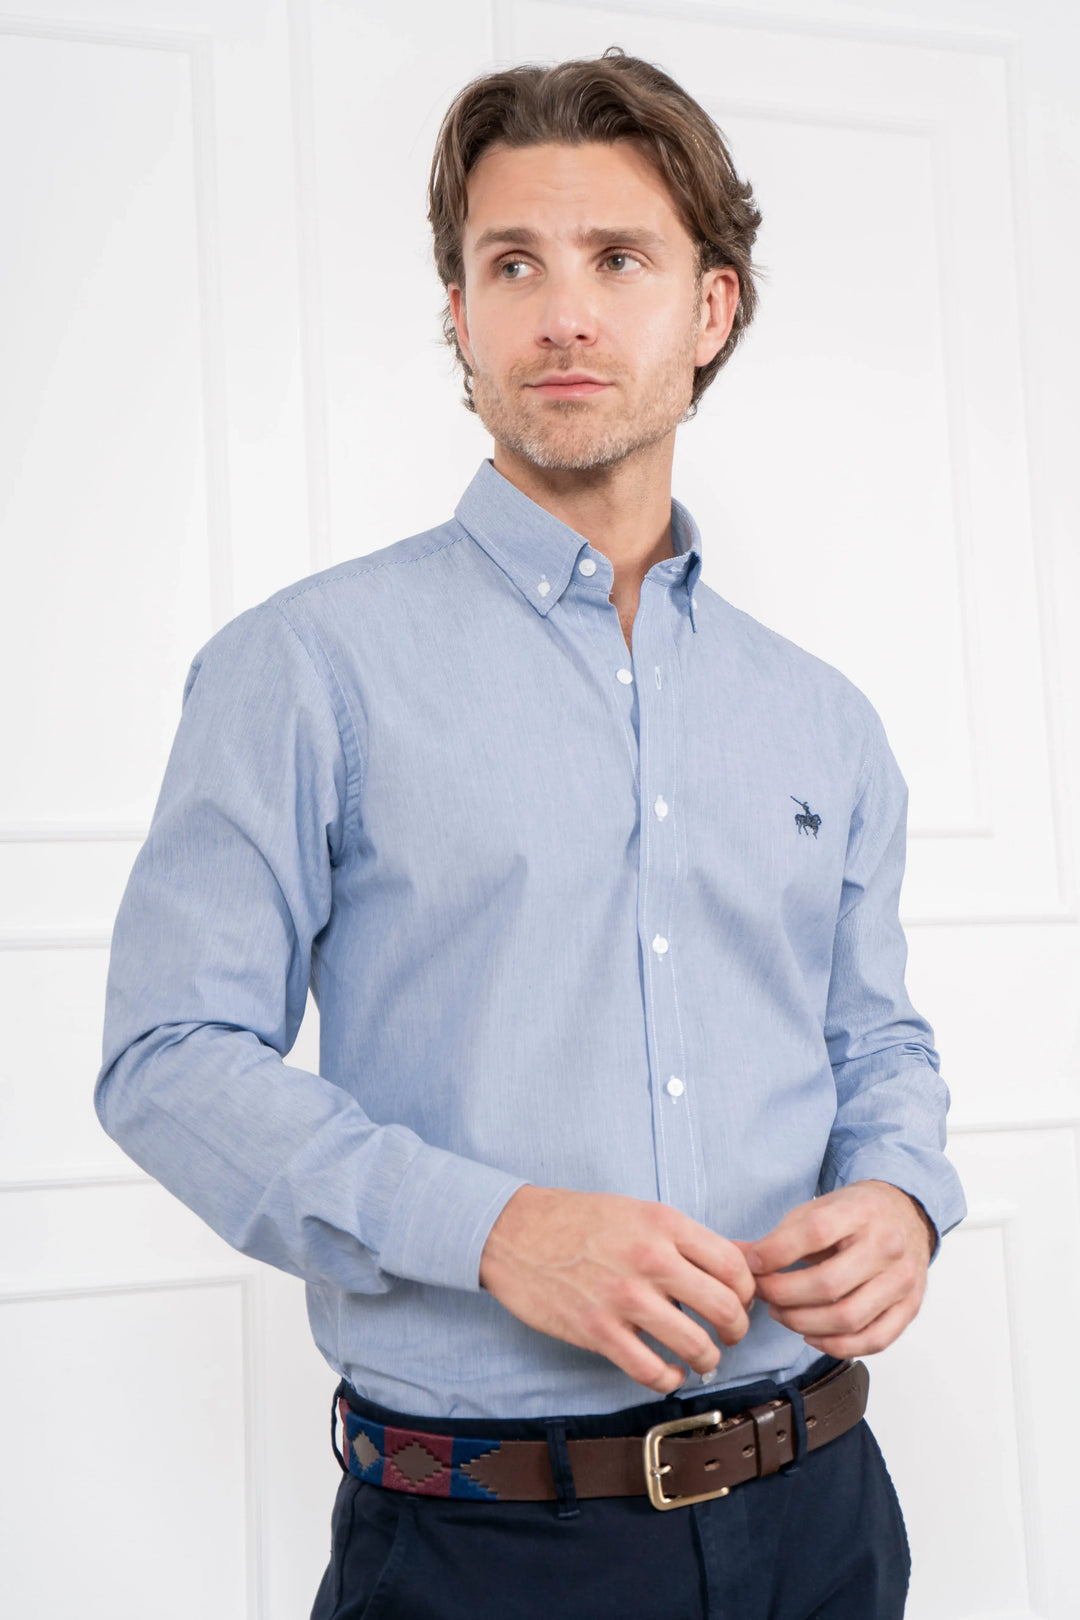 Camisa hombre patrón de rayas en un tono azul suave sofisticado. equilibrio perfecto entre lo clásico y lo contemporáneo.